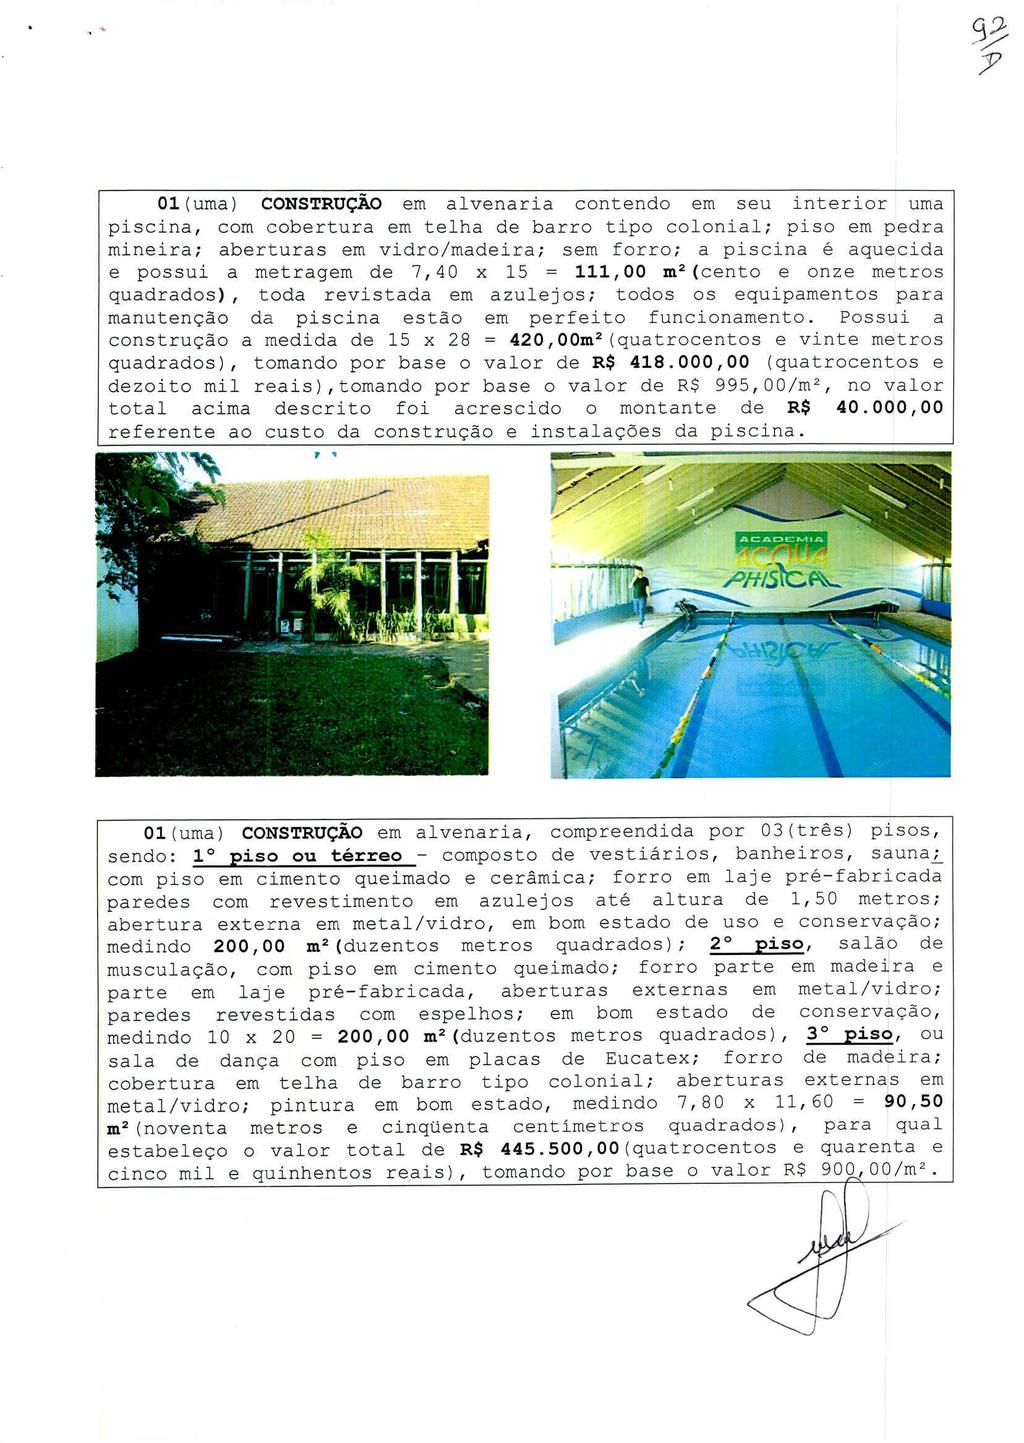 93 01(uma) CONSTRUÇÃO em alvenaria contendo em seu interior uma piscina, com cobertura em telha de barro tipo colonial; piso em pedra mineira; aberturas em vidro/madeira; sem forro; a piscina é